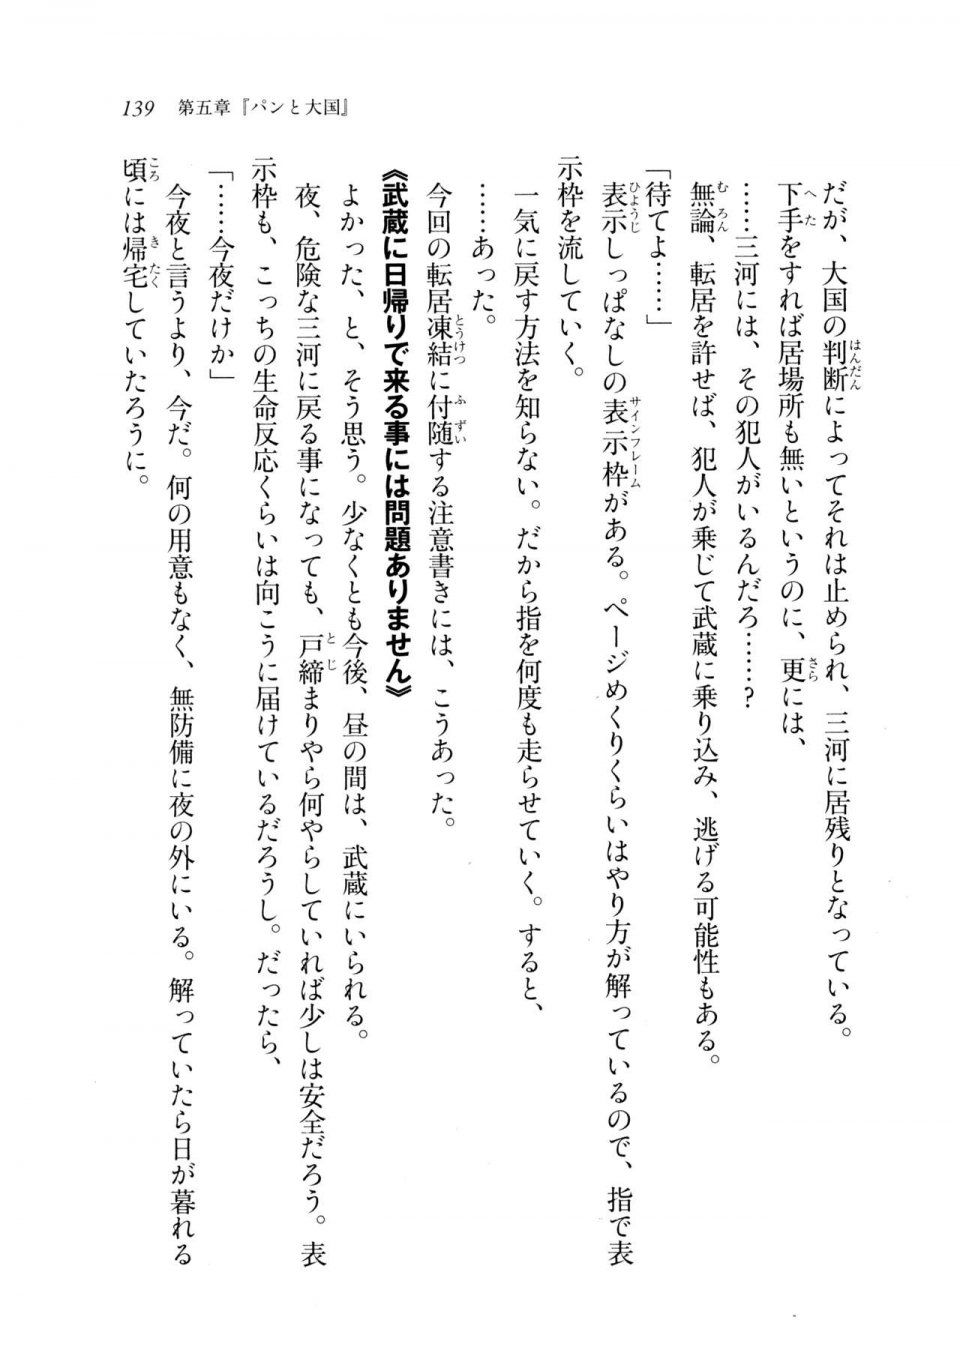 Kyoukai Senjou no Horizon LN Sidestory Vol 2 - Photo #137